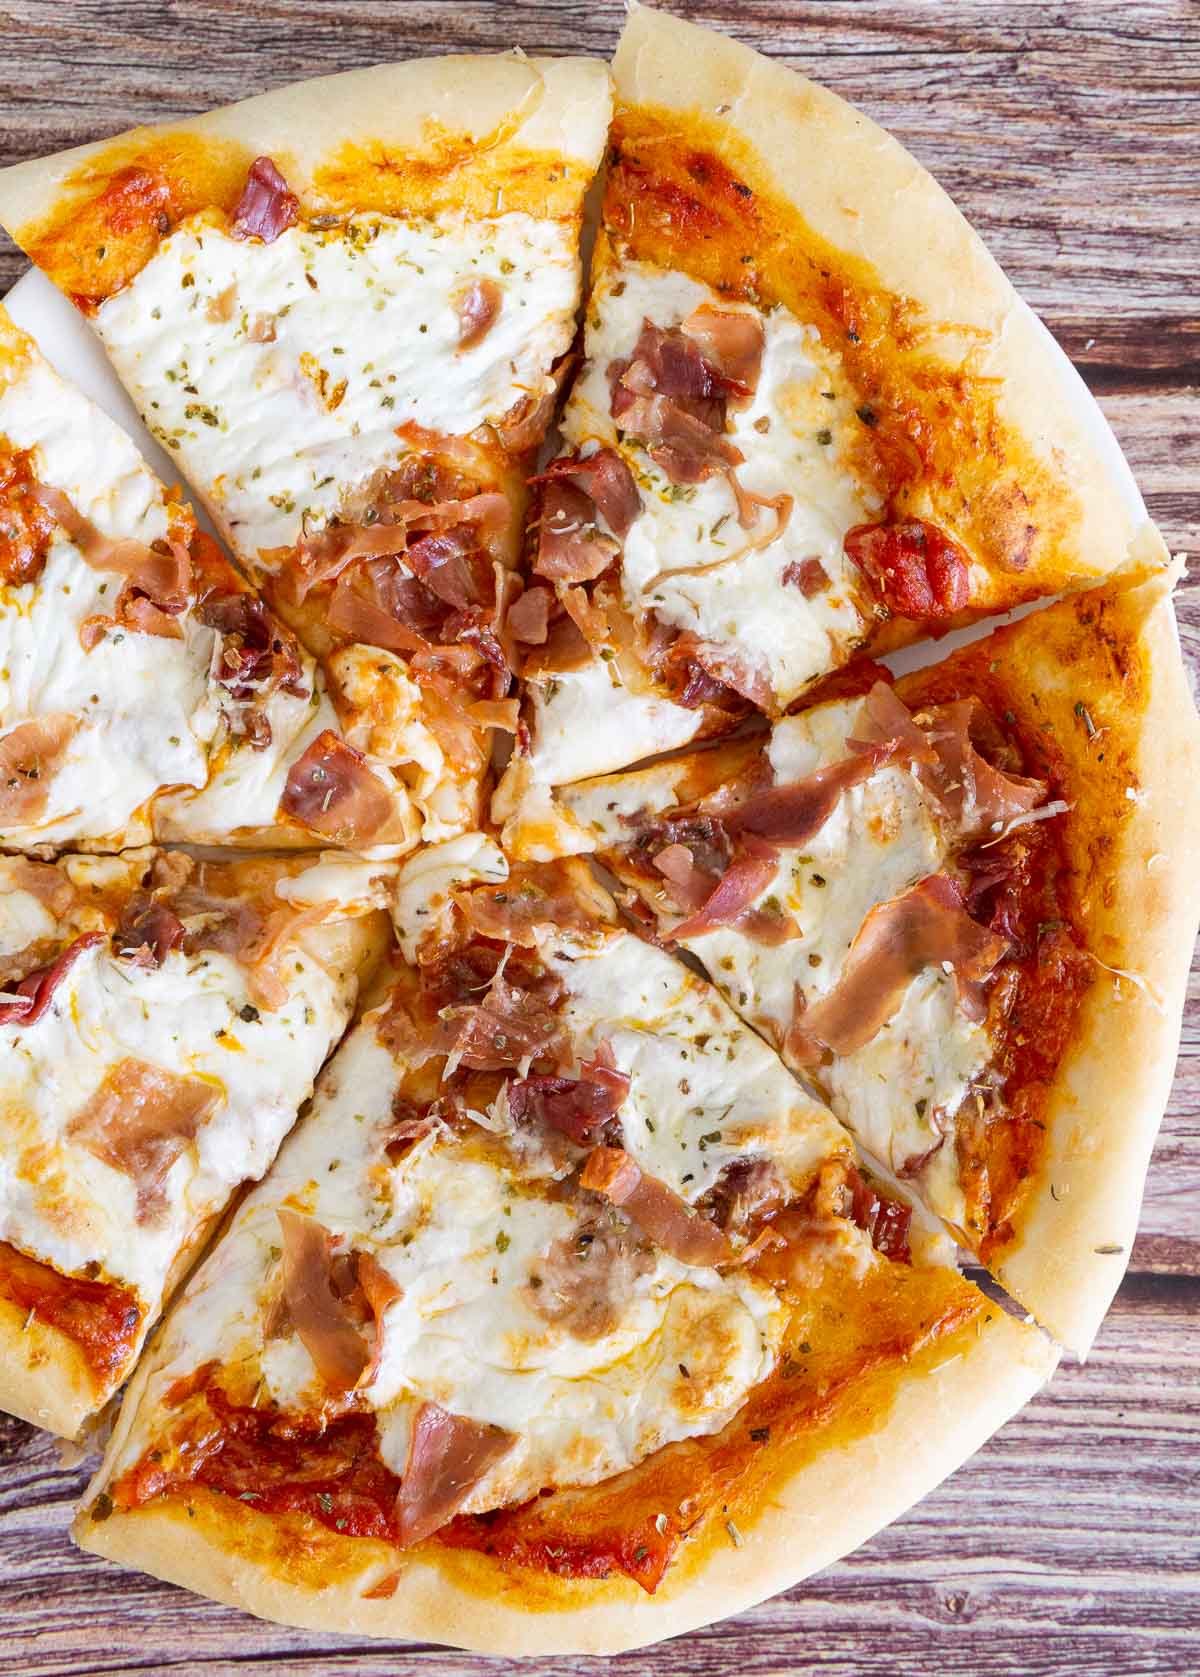 Prosciutto pizza with fresh mozzarella